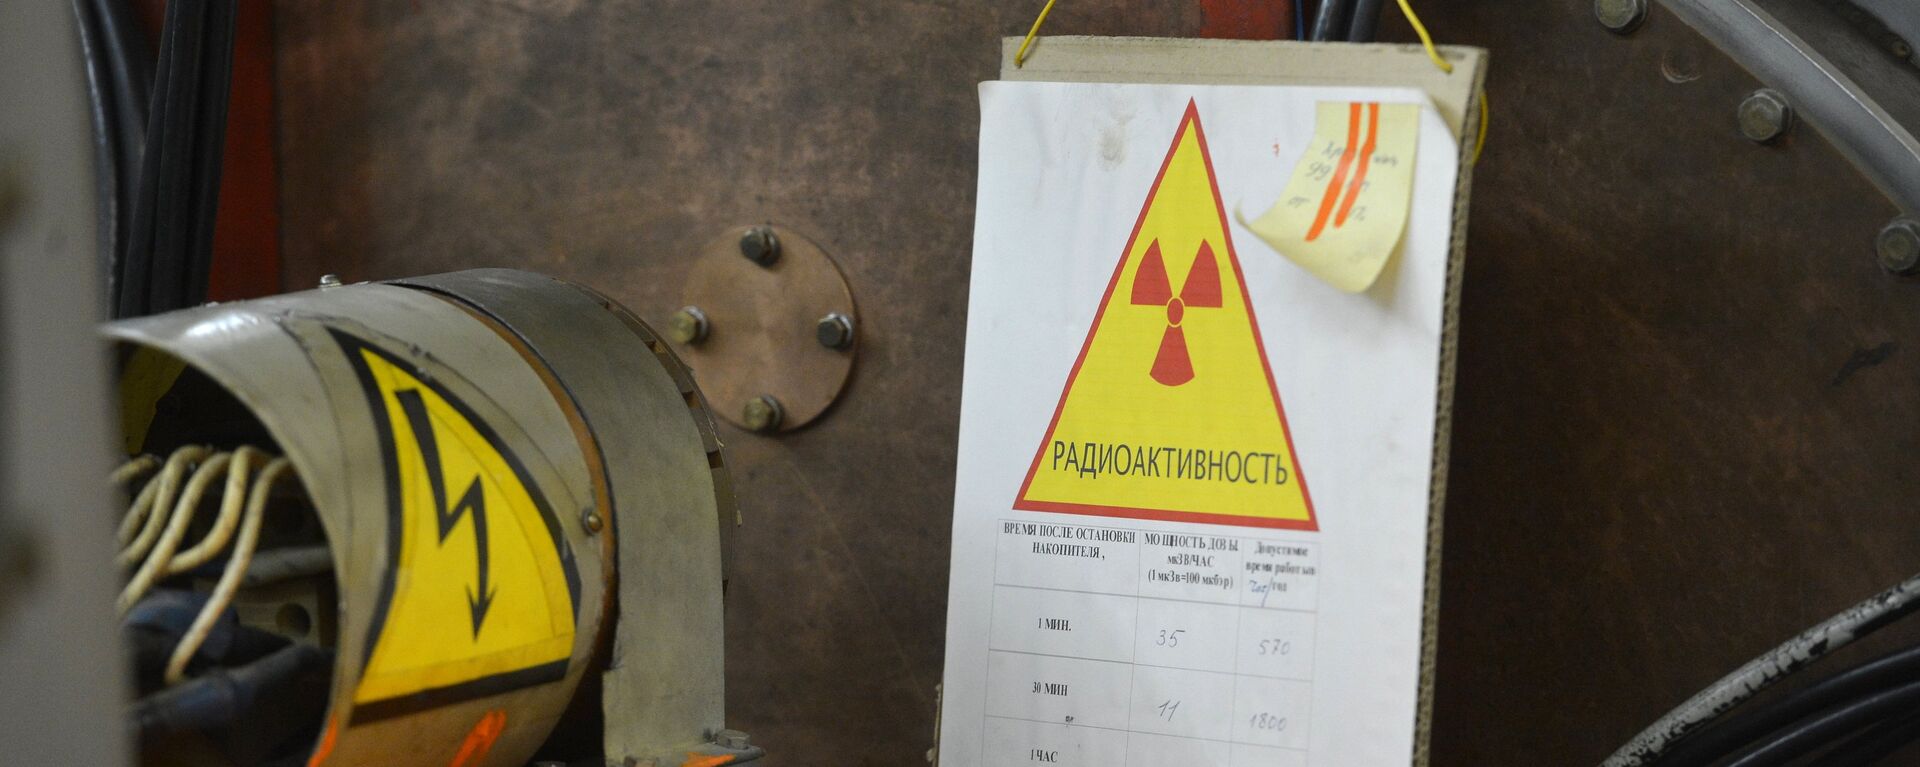 Радиация оборудование - Sputnik Молдова, 1920, 08.10.2018